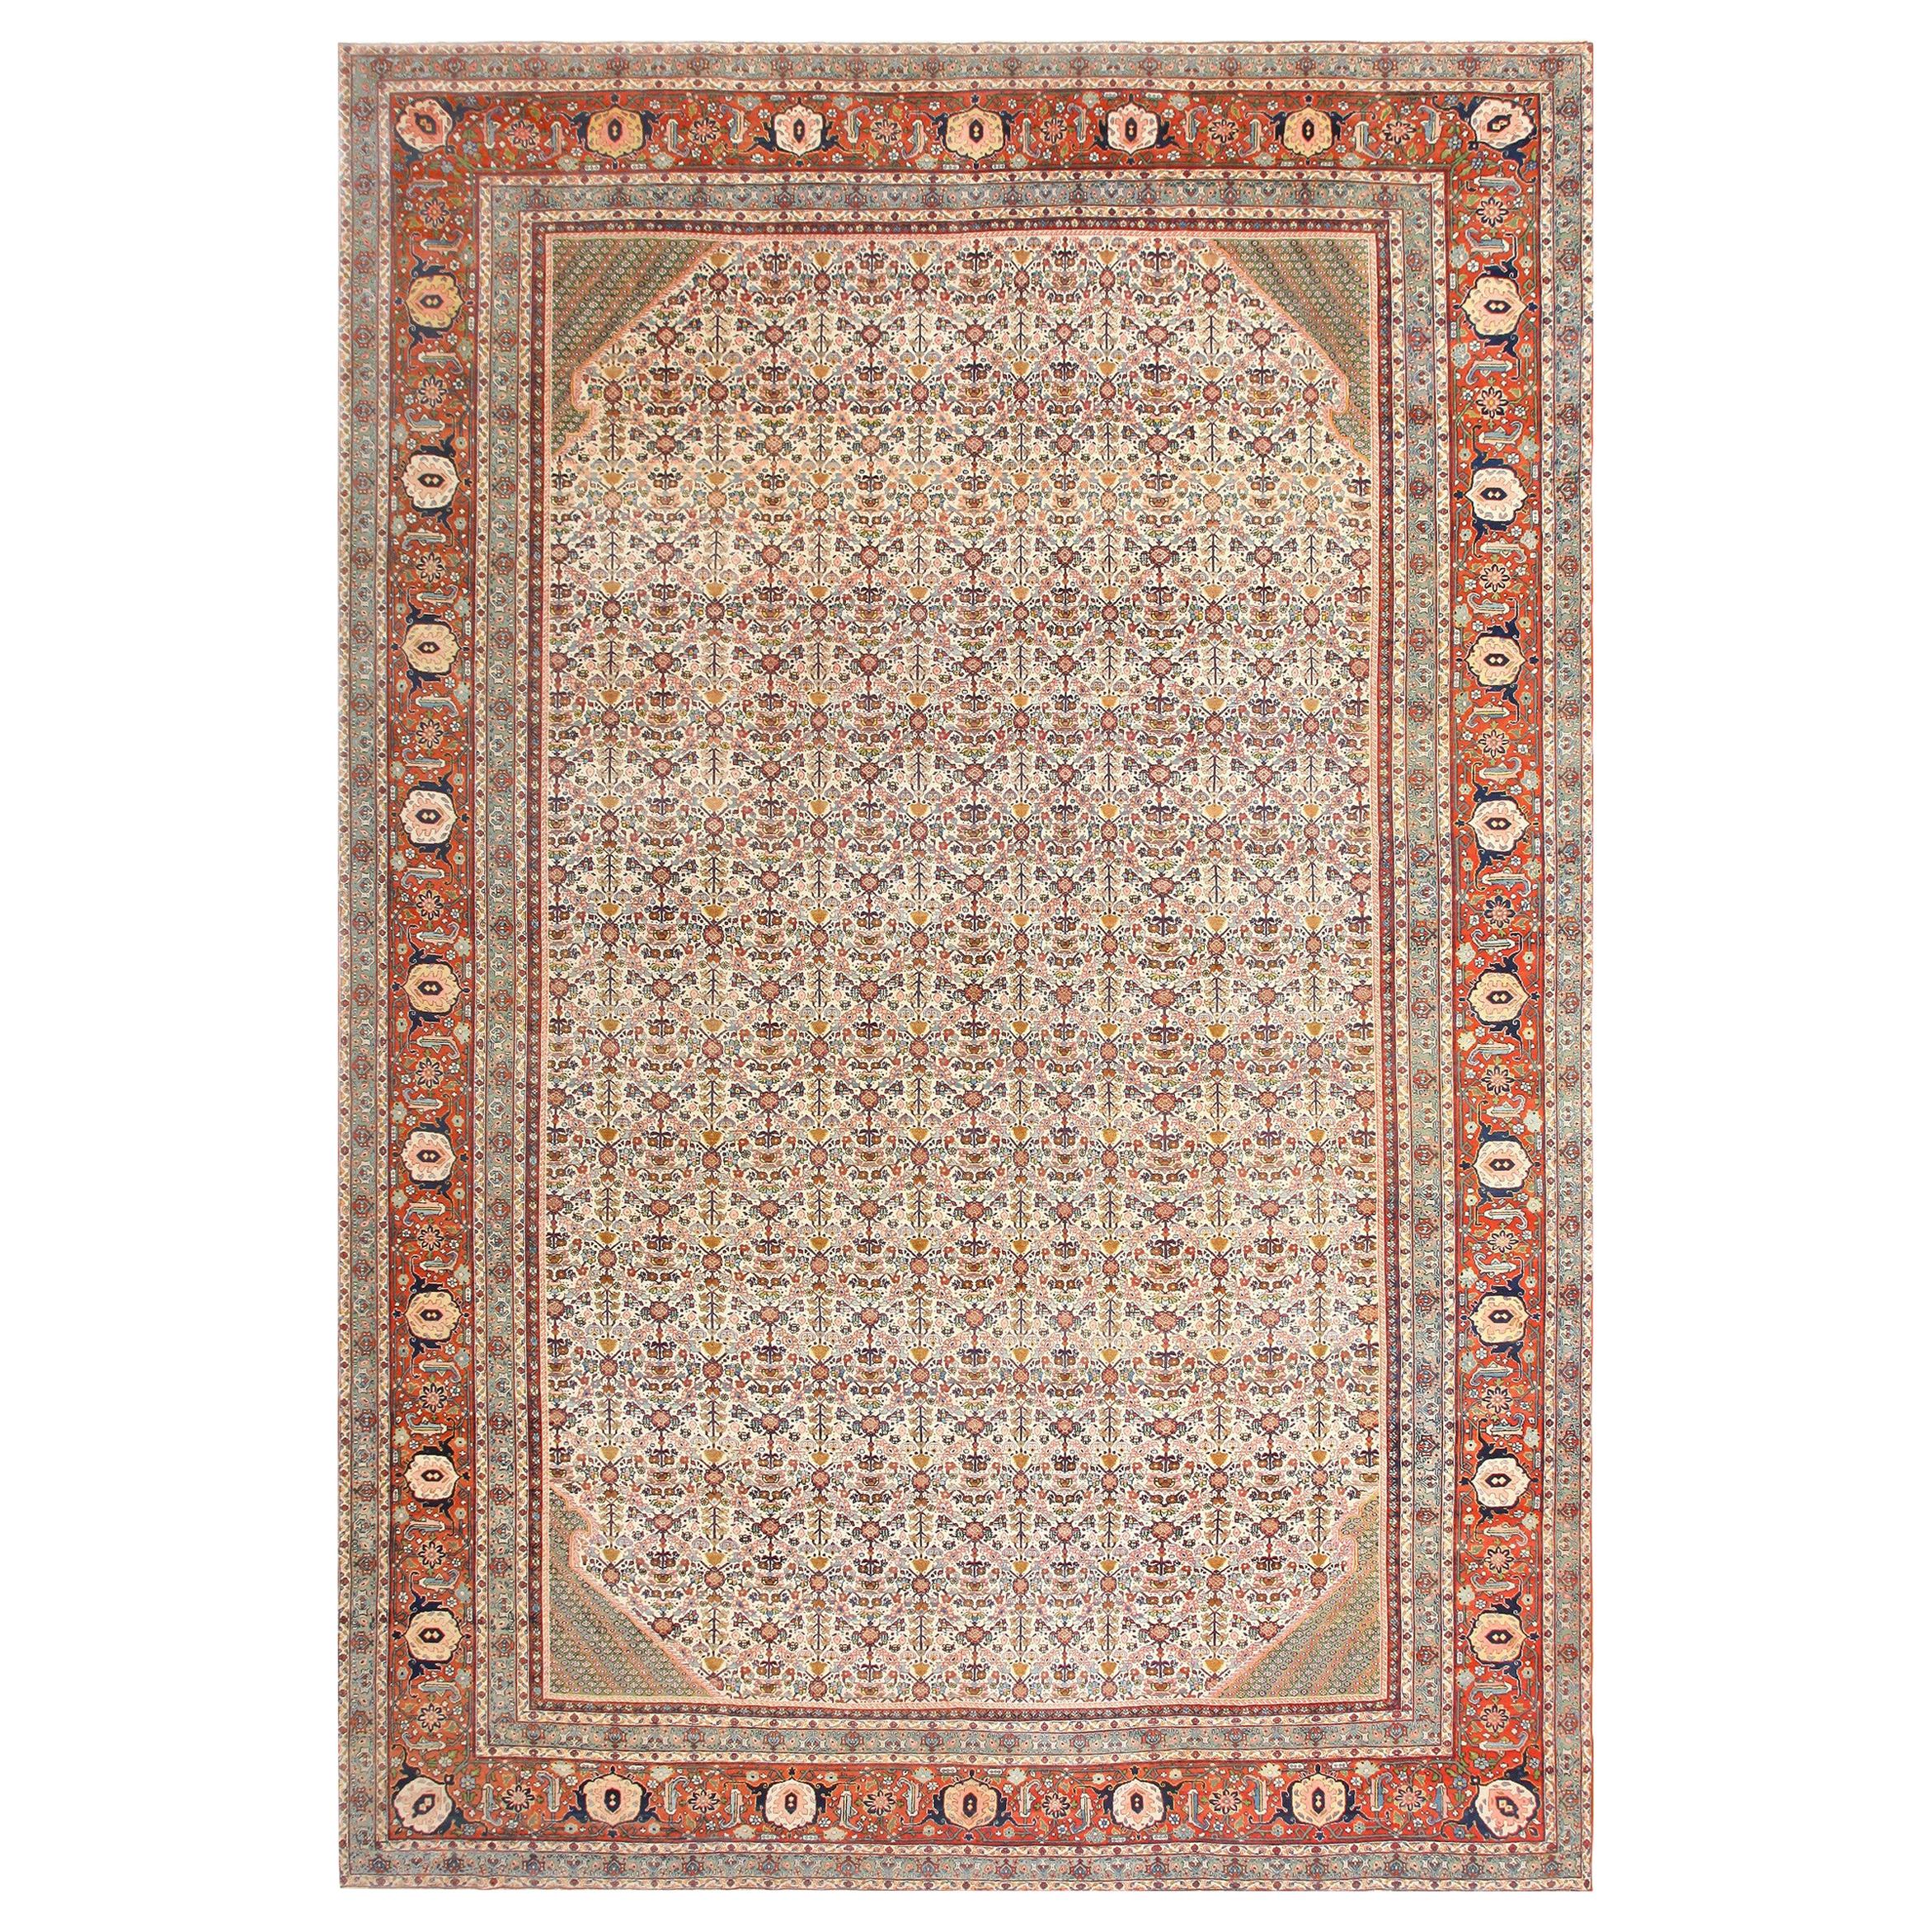 Large Antique Ivory Haji Jalili Persian Tabriz Rug. Size: 12' 10" x 19' 2" 